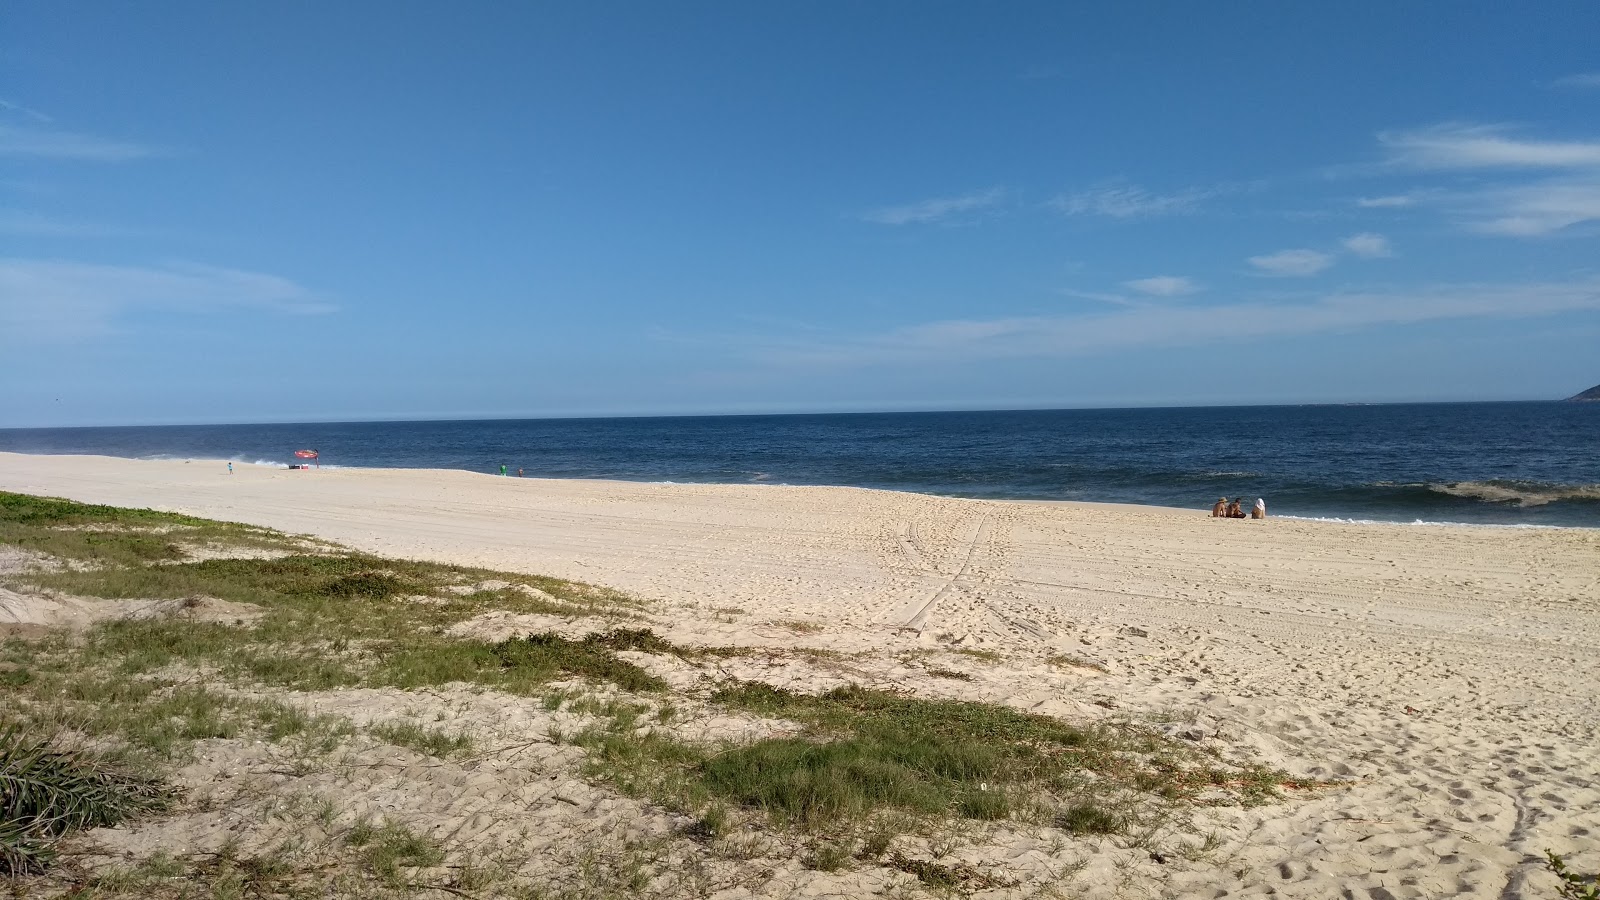 Fotografie cu Praia do Frances cu o suprafață de apă pură albastră